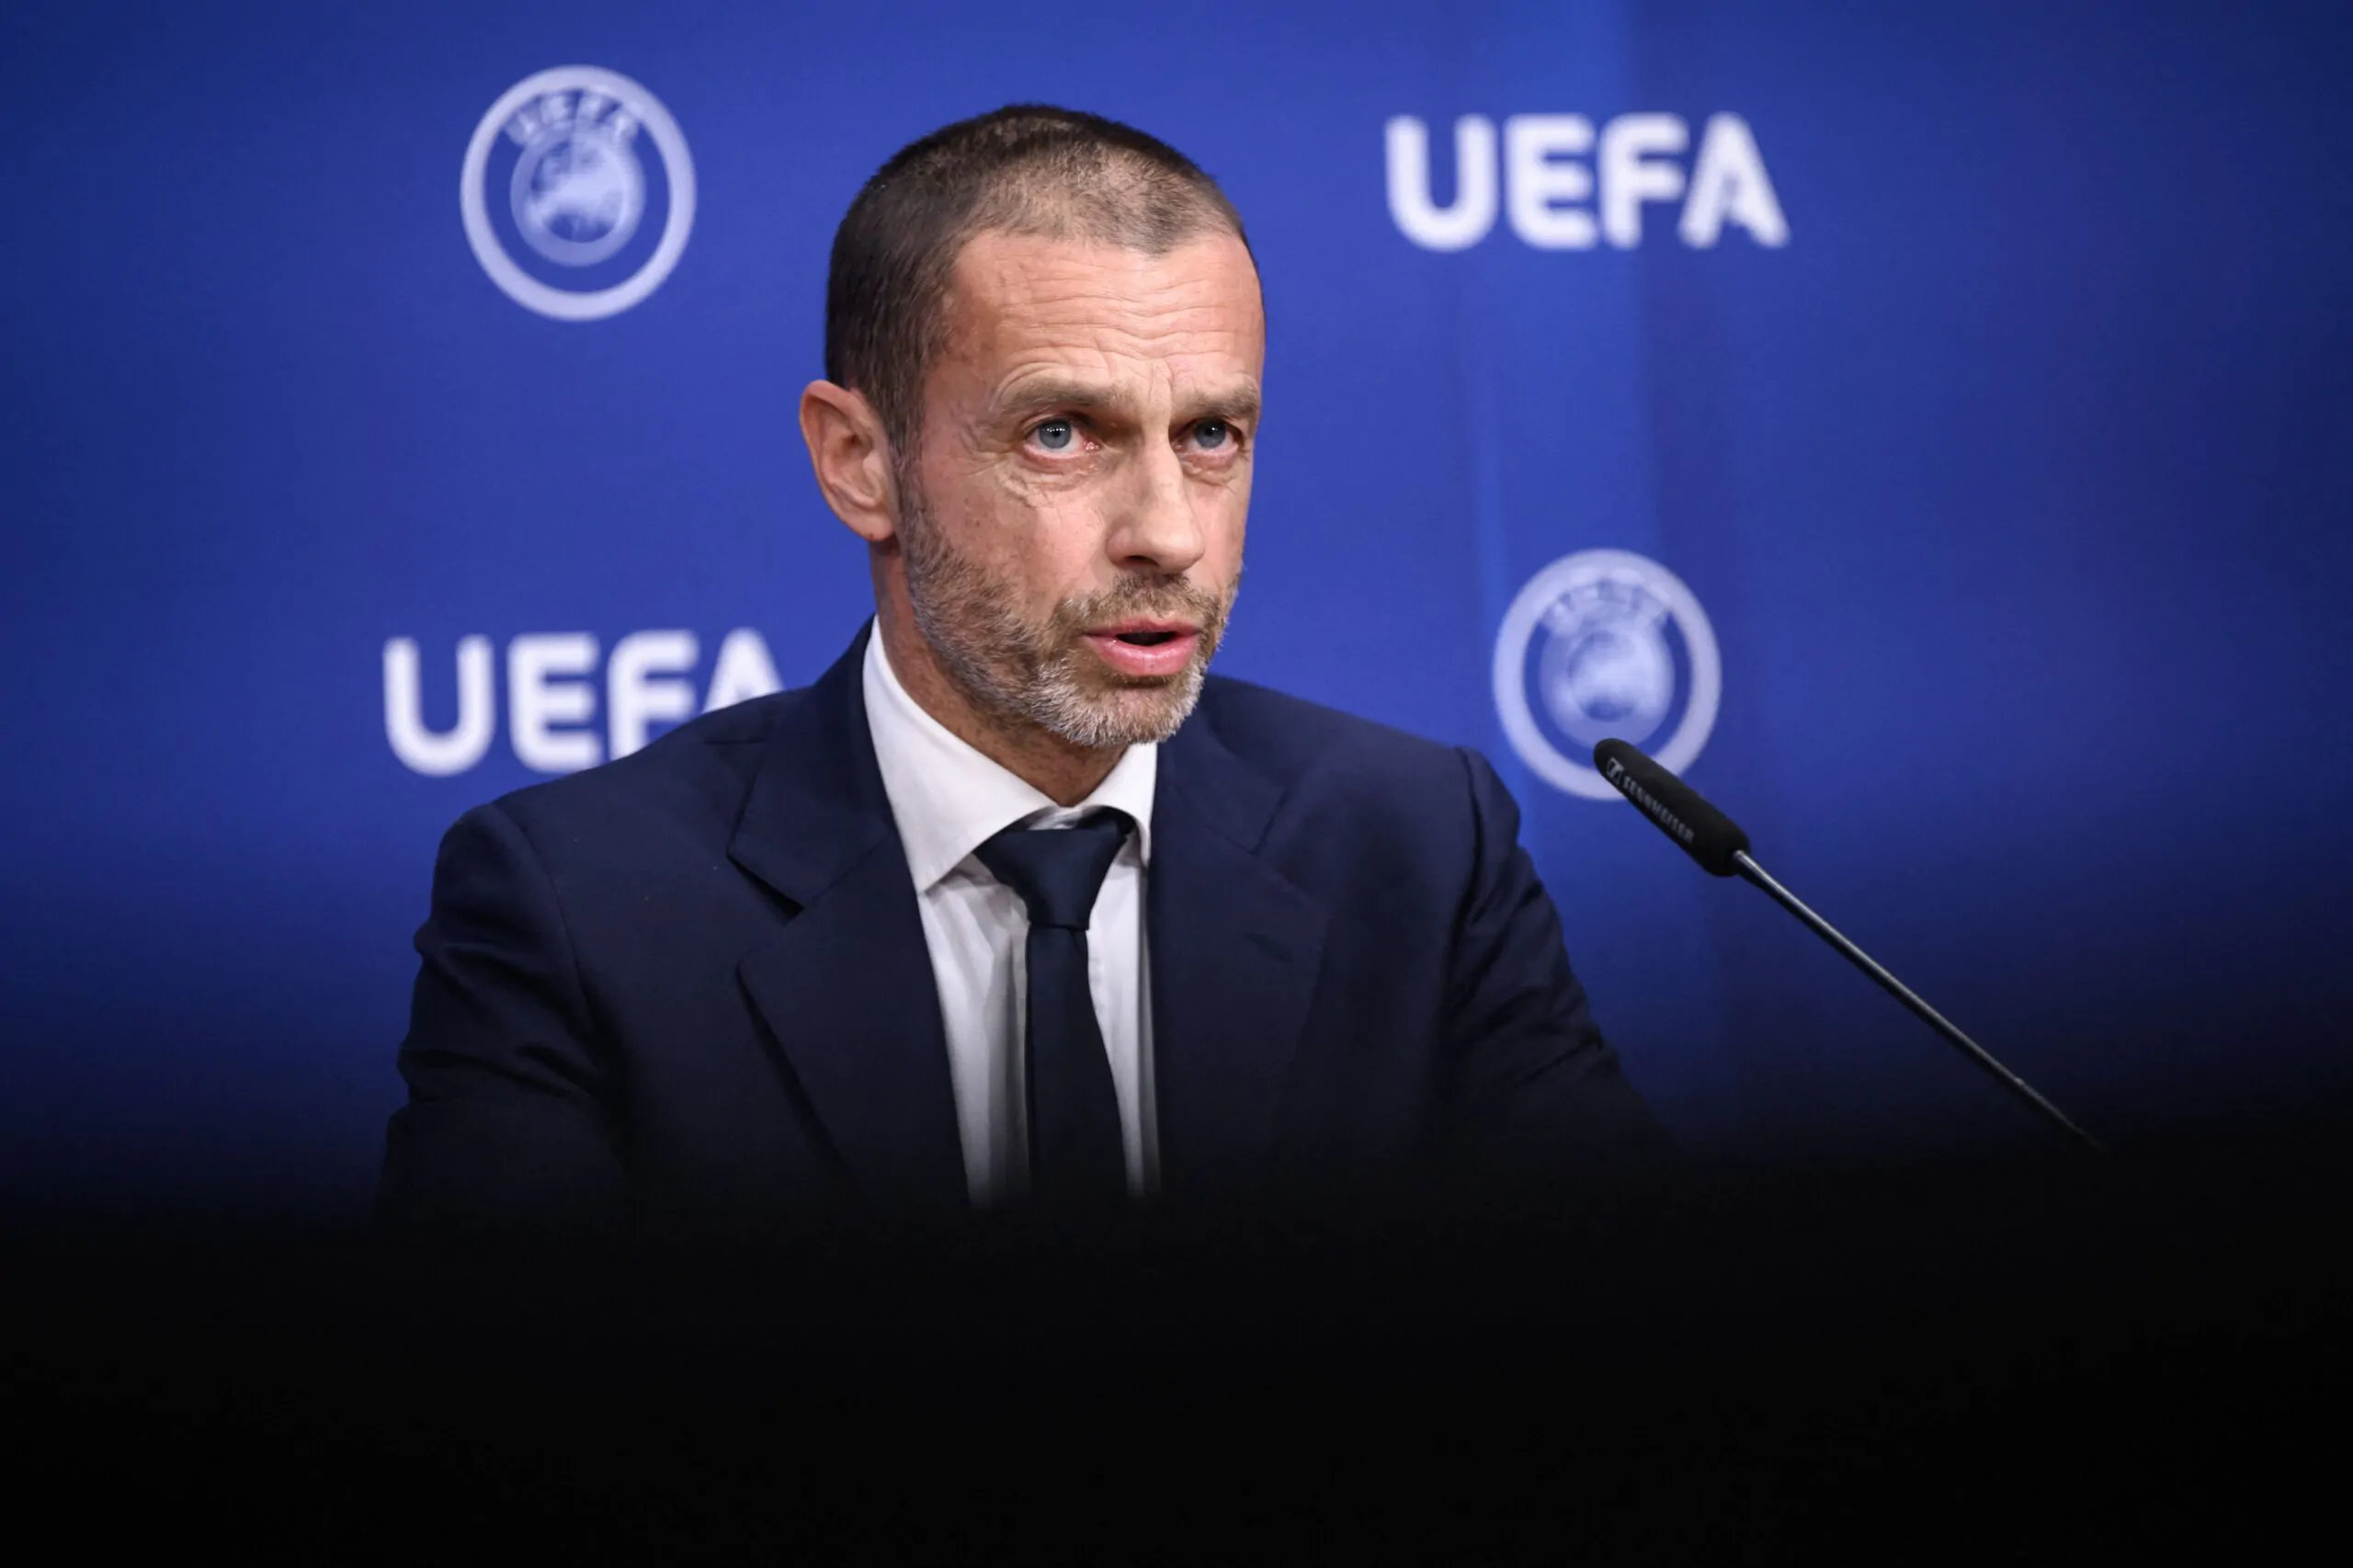 UEFA, Ceferin attacca ancora: “Dobbiamo farlo per battere i giganti del calcio!”